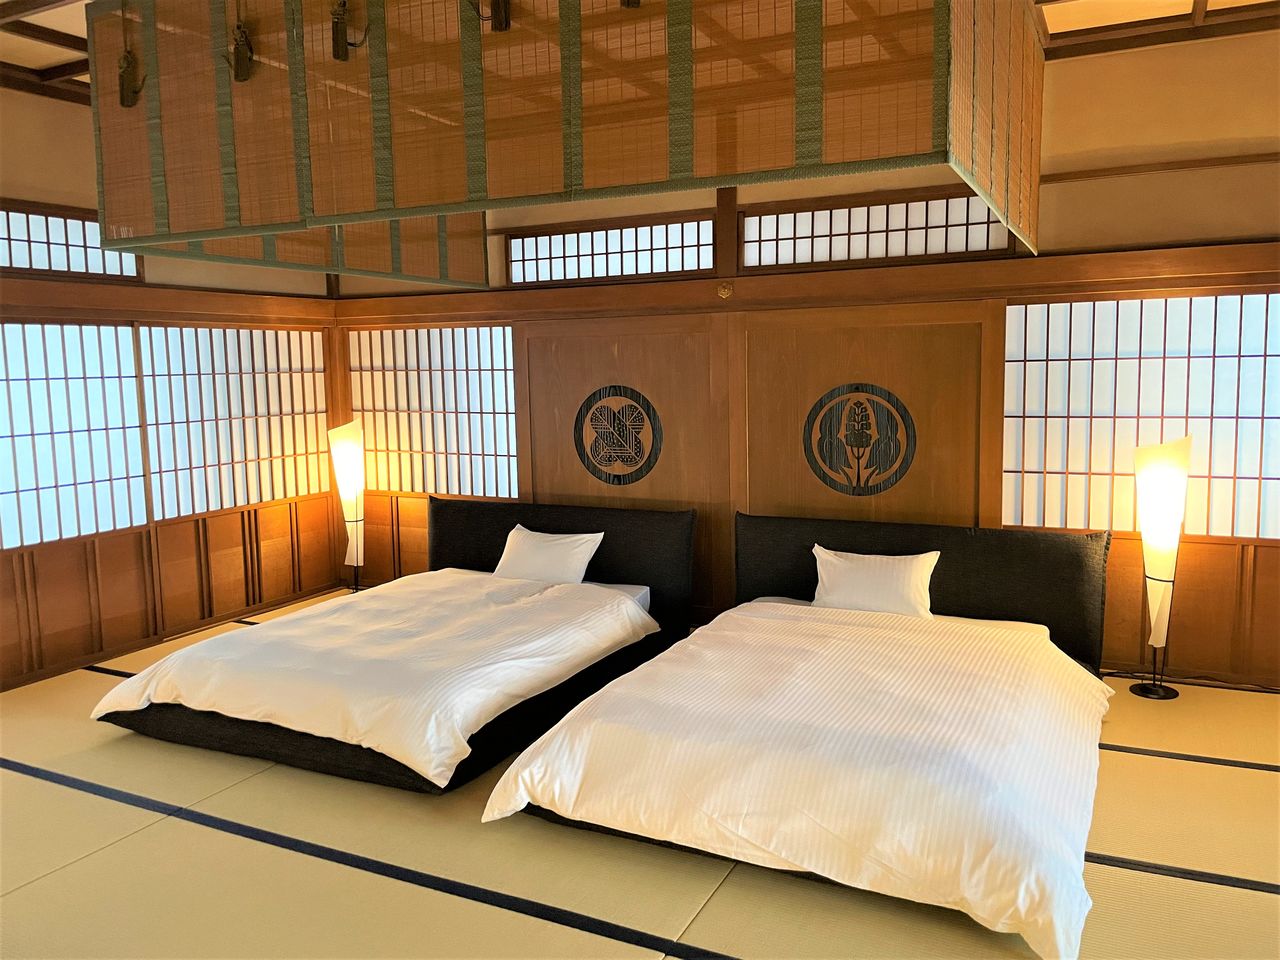 Les hôtes accueillis dans la tour de guet du château de Fukuyama dormiront dans une vaste pièce du second étage. Les panneaux sont ornés des armoieries familiales des clans Mizuno et Abe, les anciens clans féodaux de la région. (© château de Fukuyama)